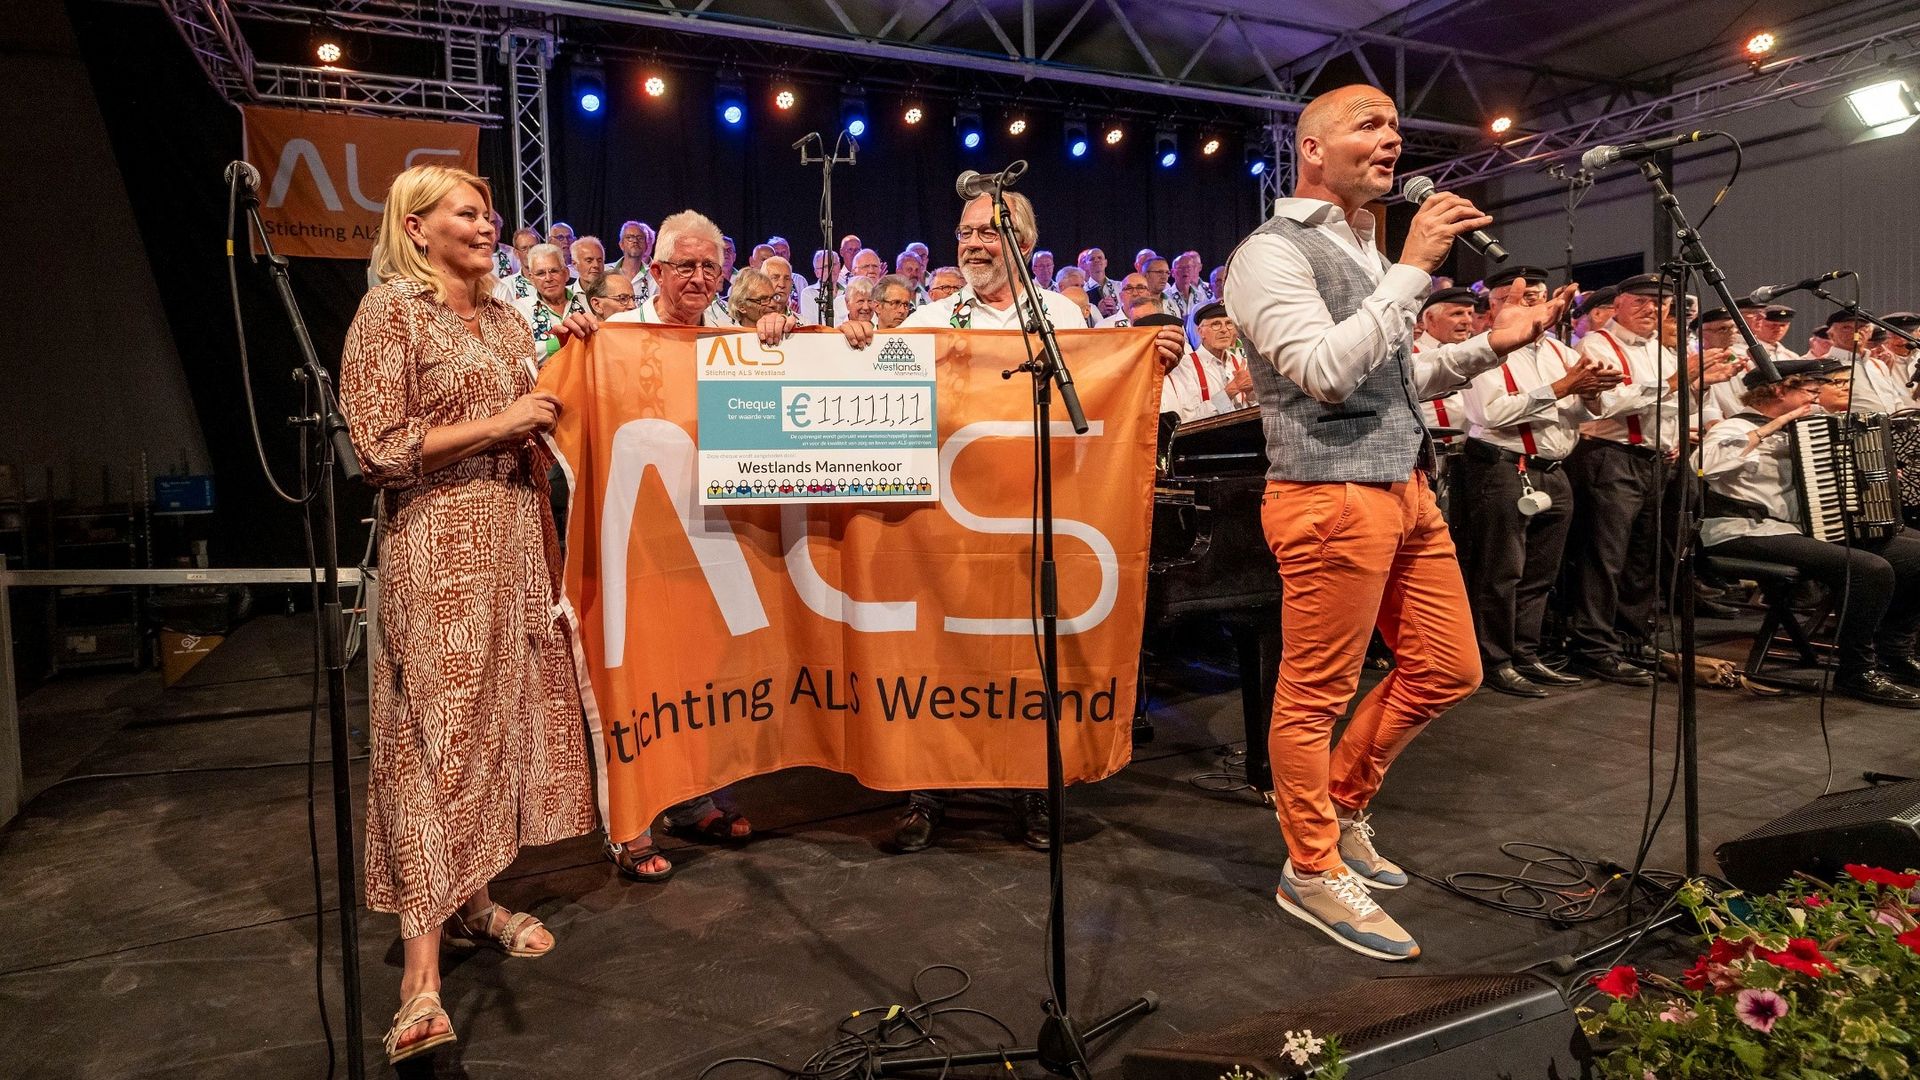 Ruim 11.000 euro opgehaald voor ALS Westland